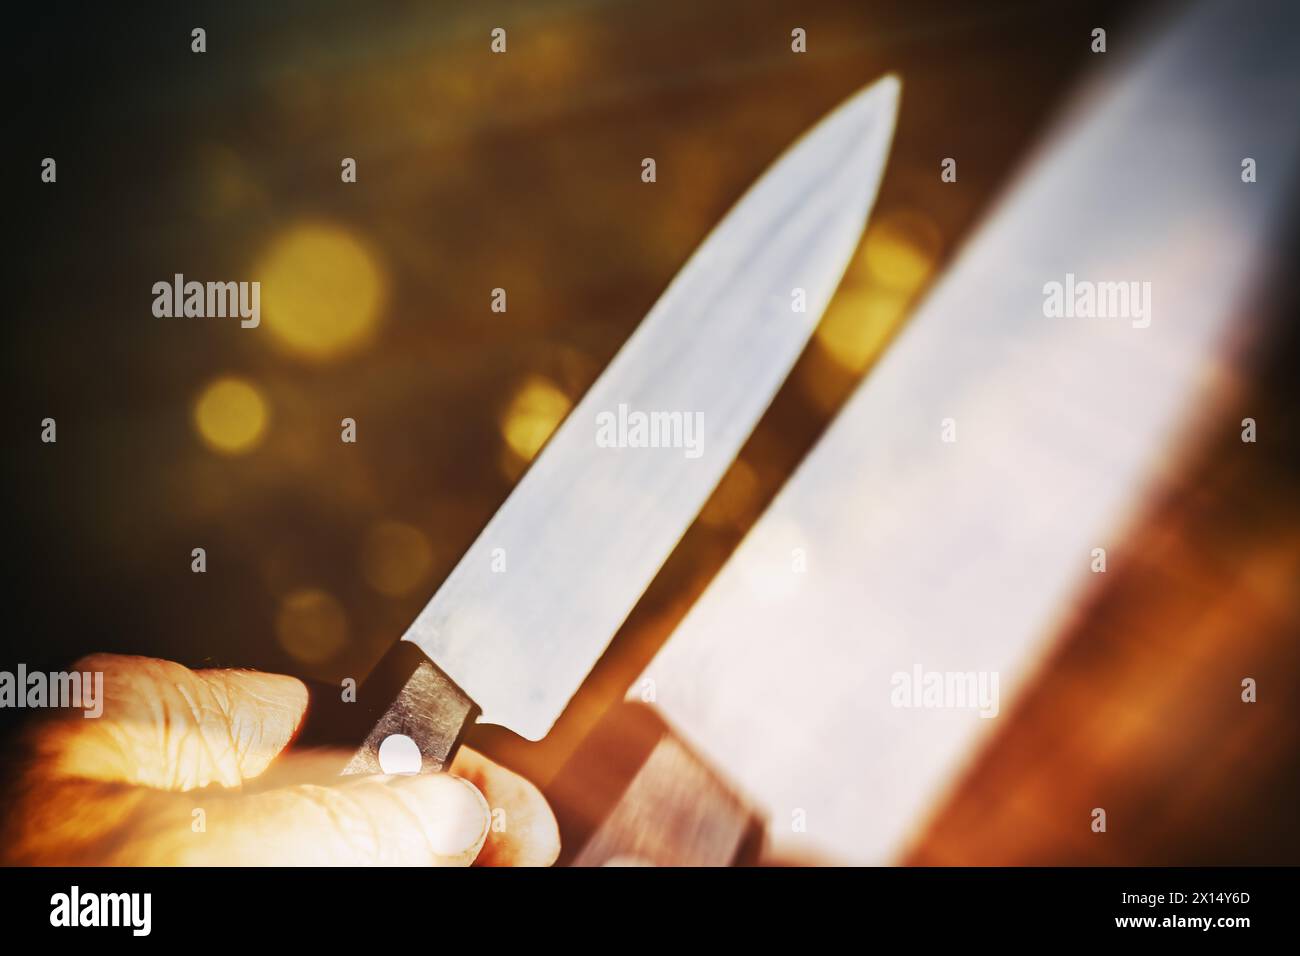 Male Hand With Knife, Symbolic Photo Crime, Photomontage Stock Photo